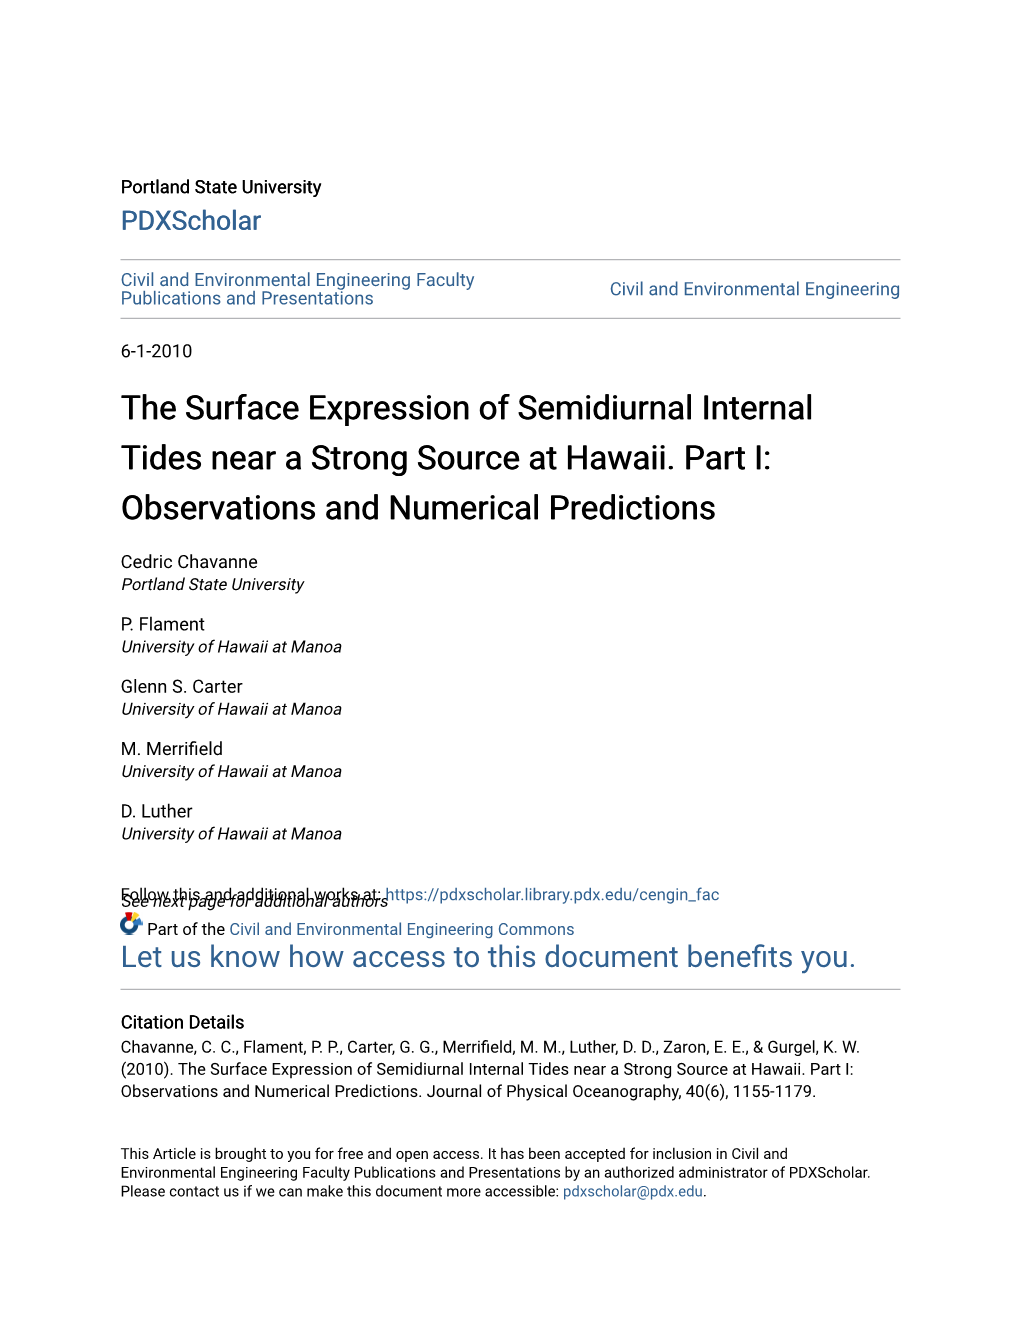 The Surface Expression of Semidiurnal Internal Tides Near a Strong Source at Hawaii